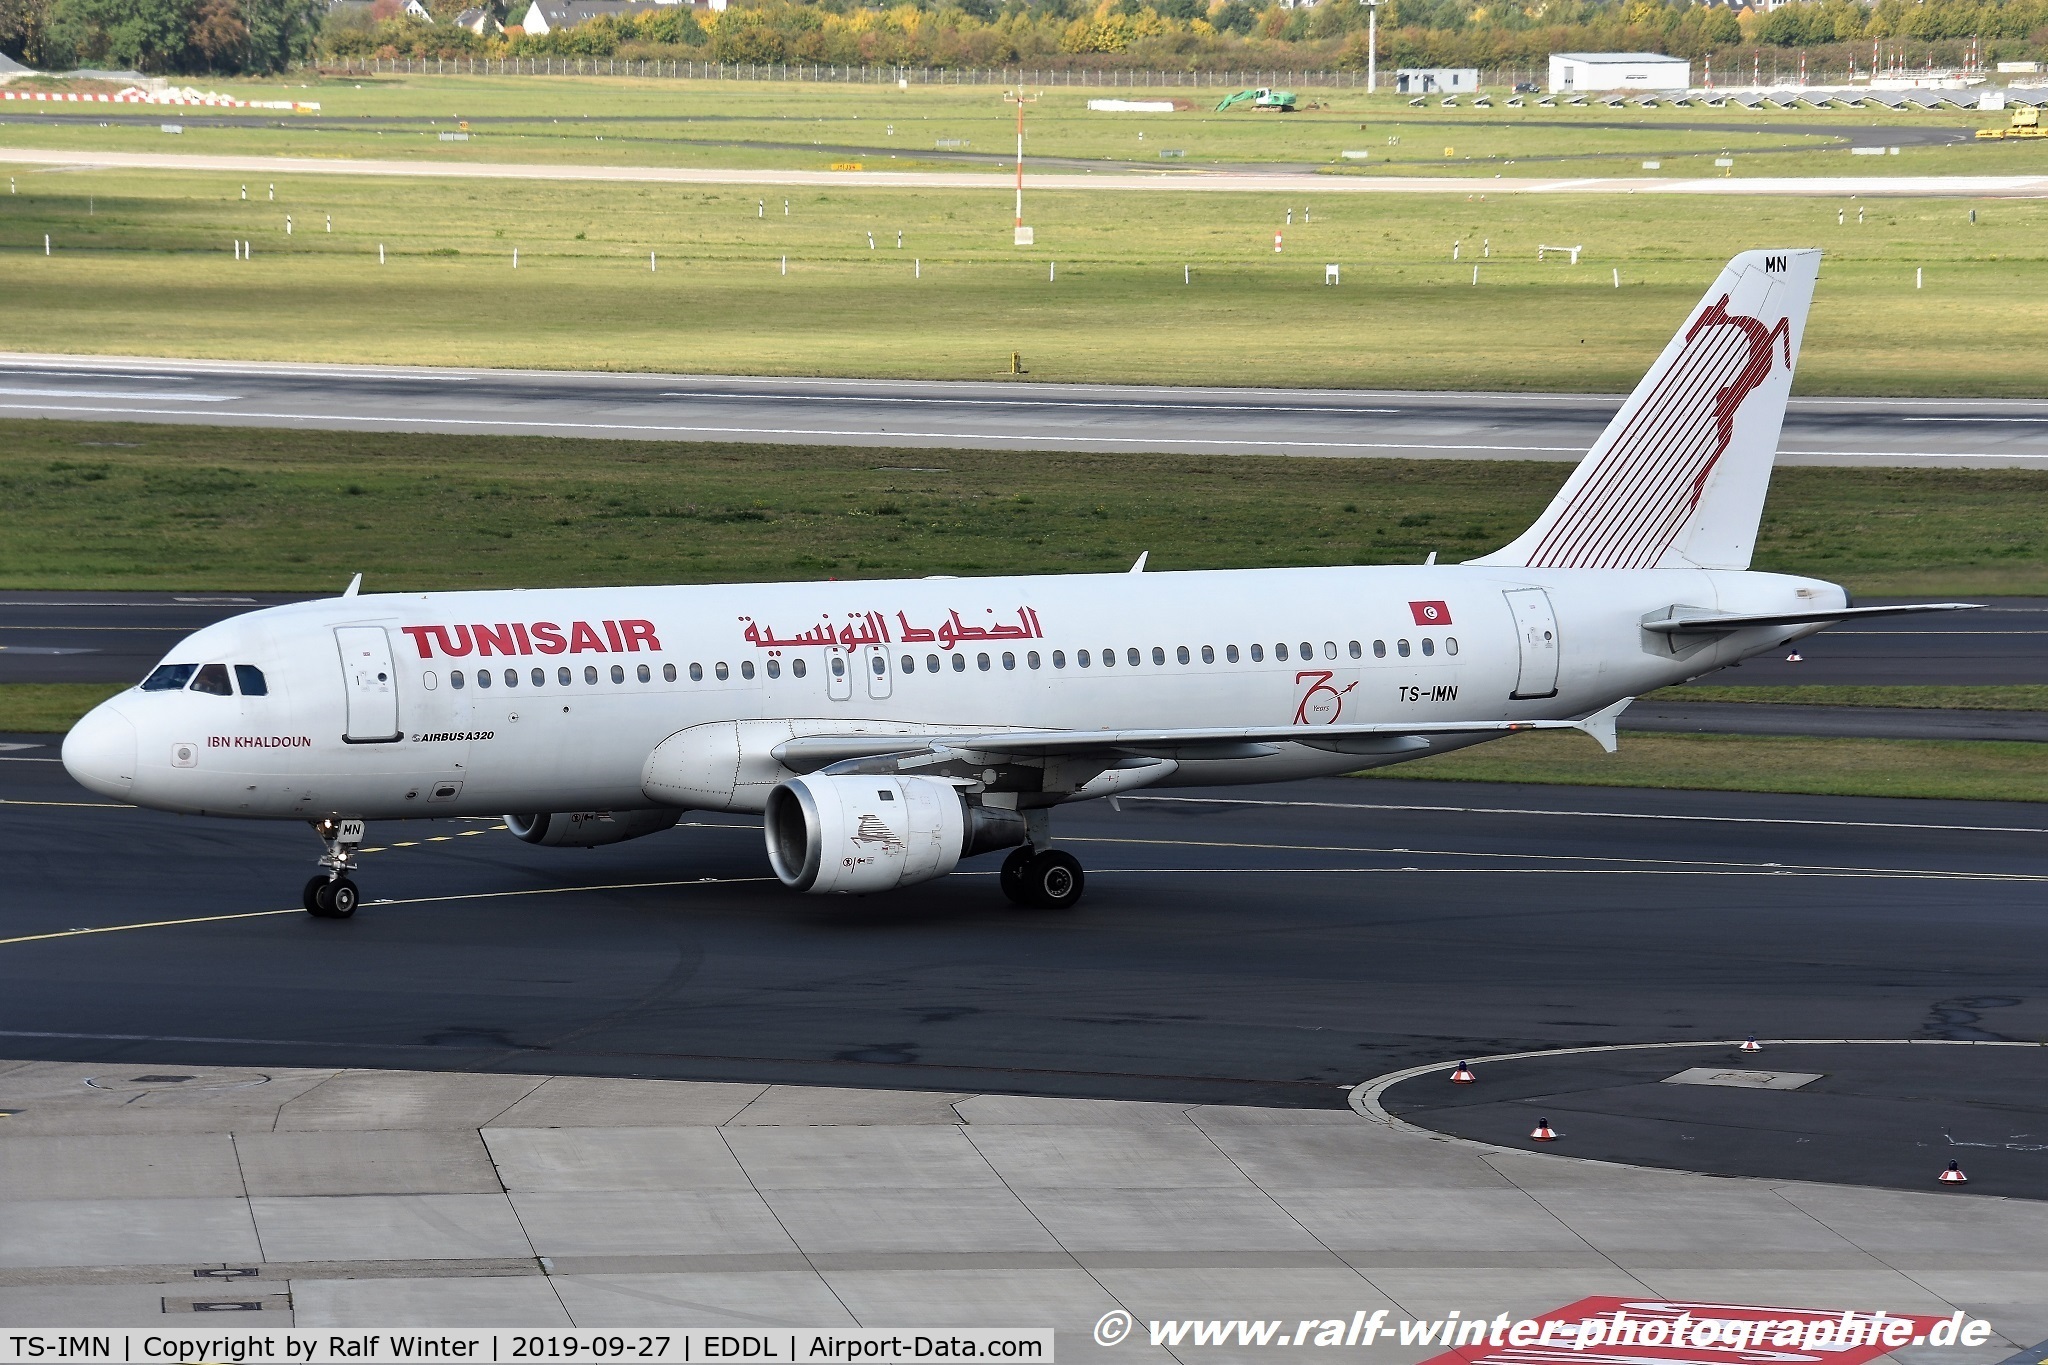 TS-IMN, 2000 Airbus A320-211 C/N 1187, Airbus A320-211 - TU TAR Tunisair '70' 'Ibn Khaldoun' - 1187 - TS-IMN - 27.09.2019 - DUS